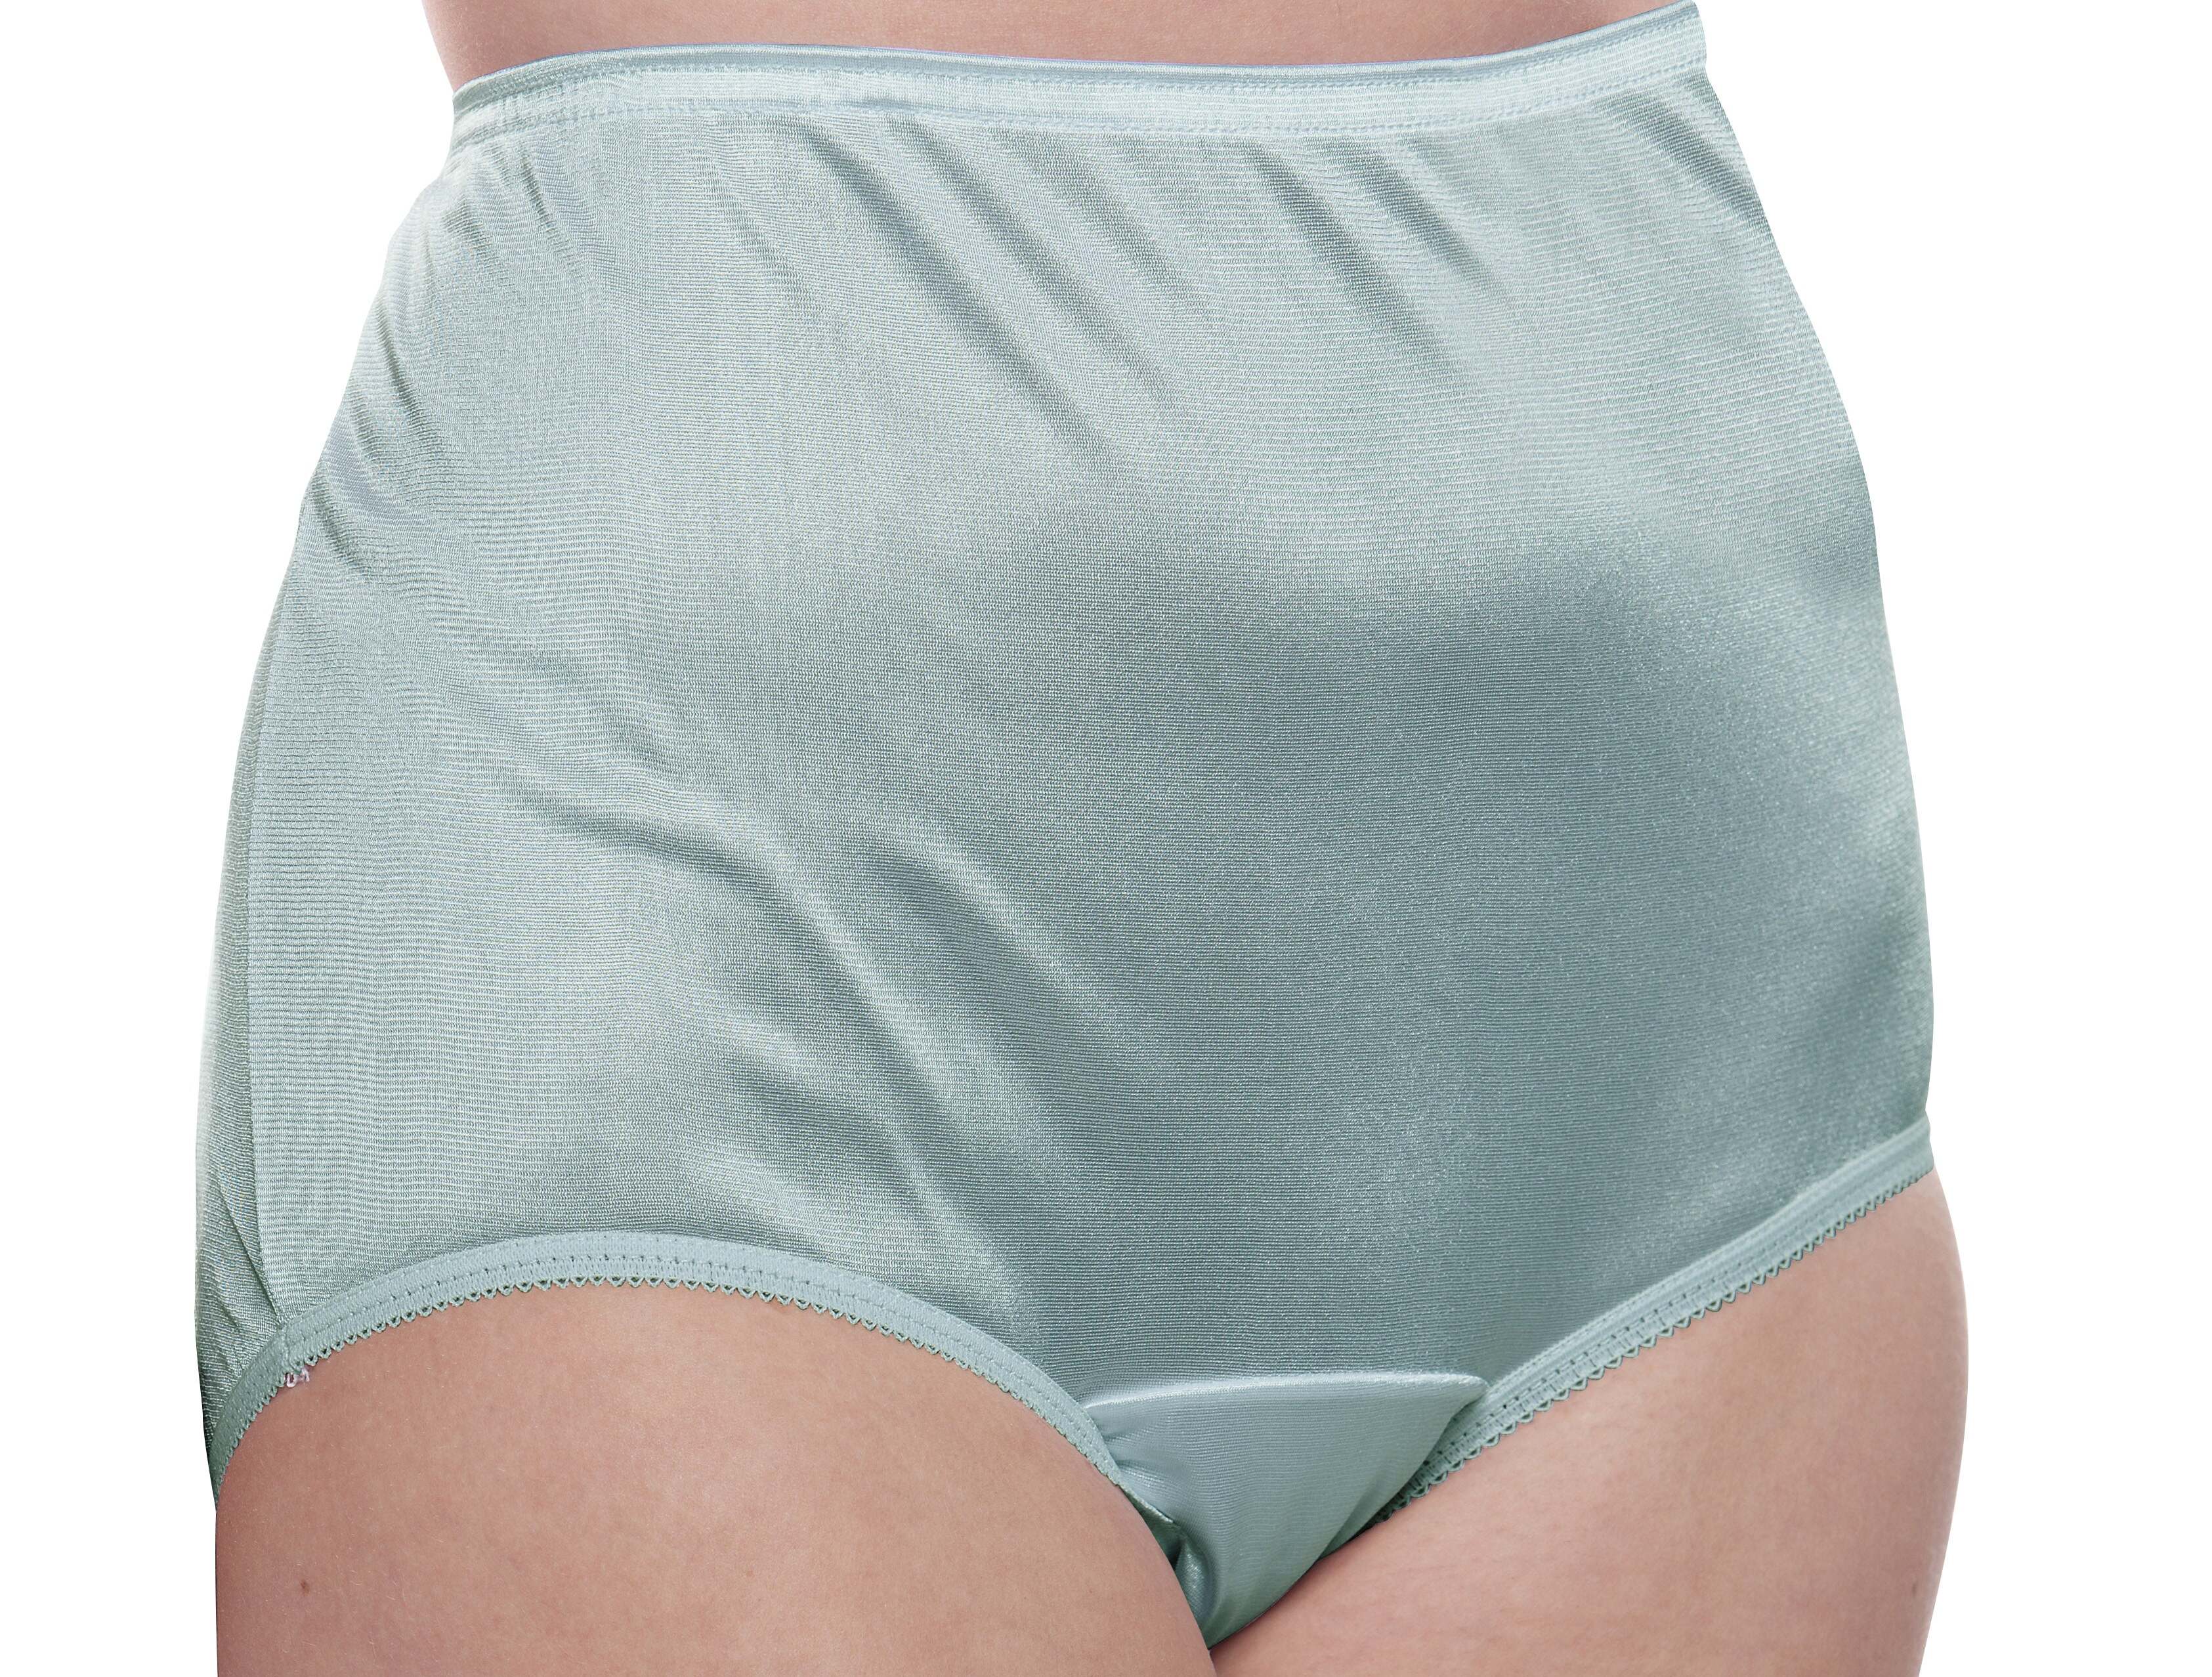 10 Amazing Nylon Panties for 2023